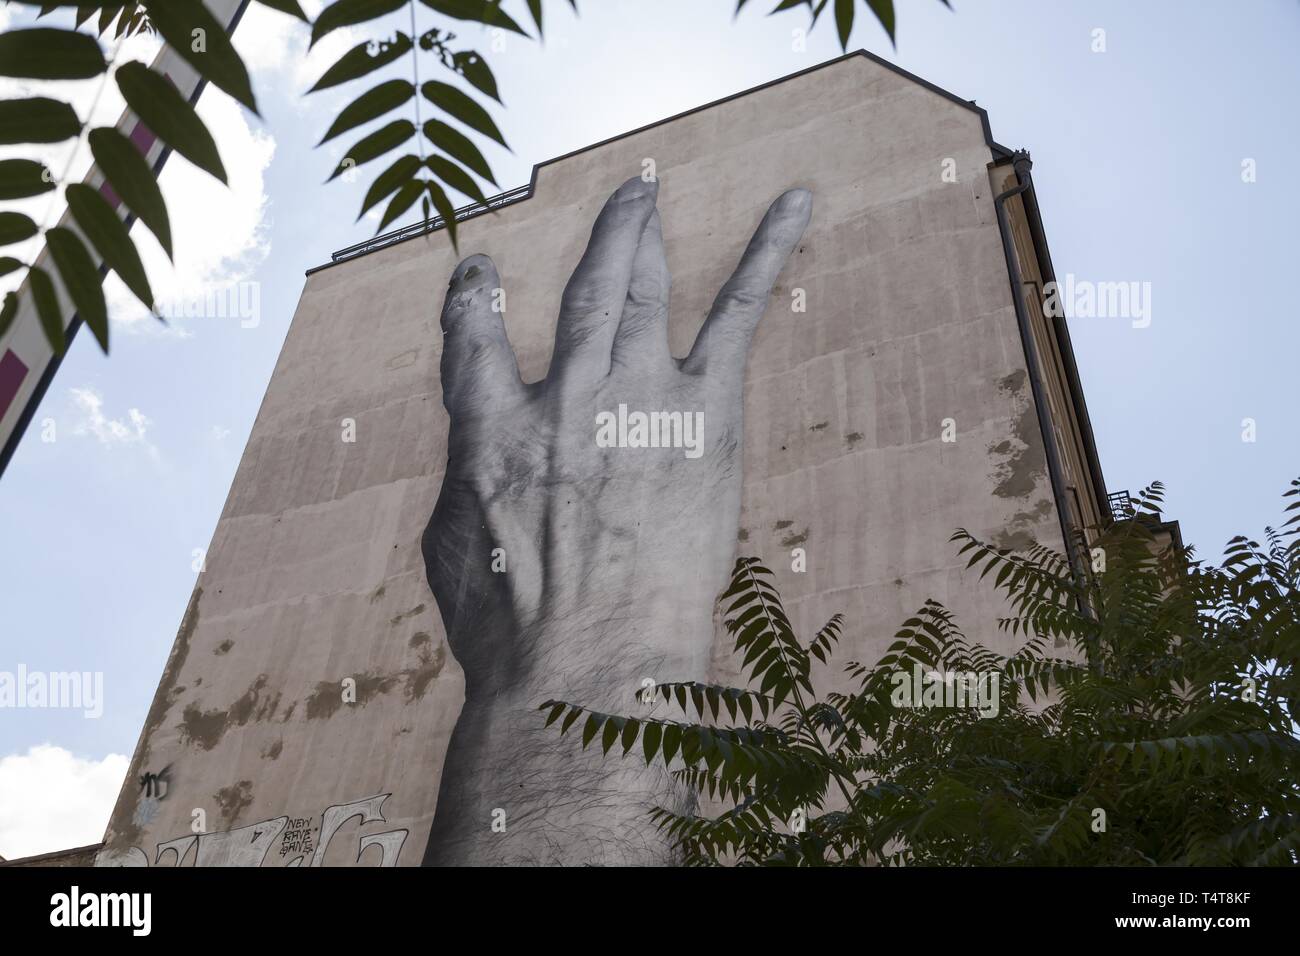 Graffiti sur mur de la maison, les doigts croisés, le centre de Berlin, Germany, Europe Banque D'Images